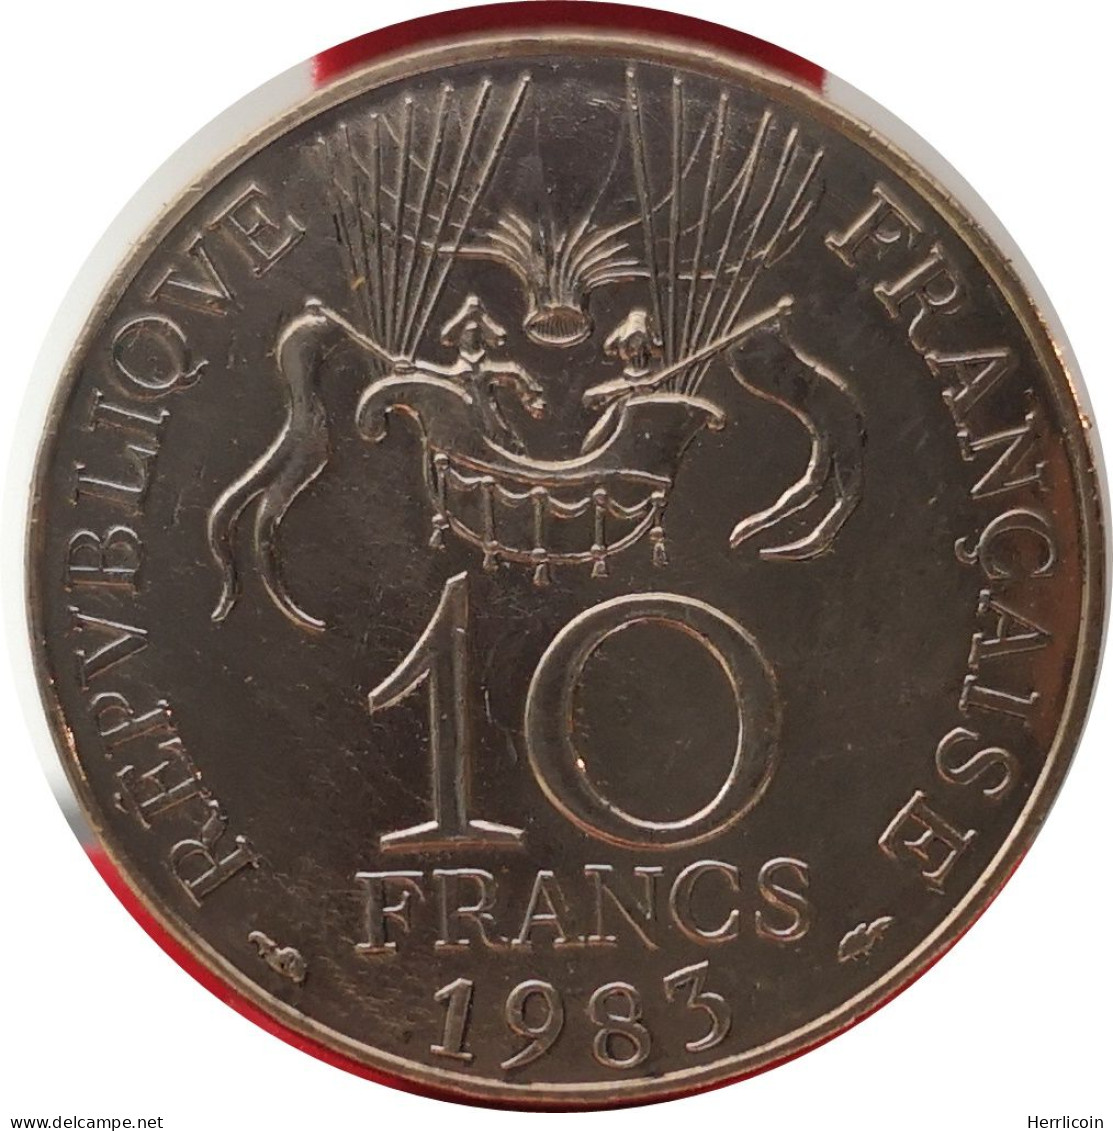 Monnaie France - 1983 Tranche A - 10 Francs Conquête De L'Espace - Commémoratives